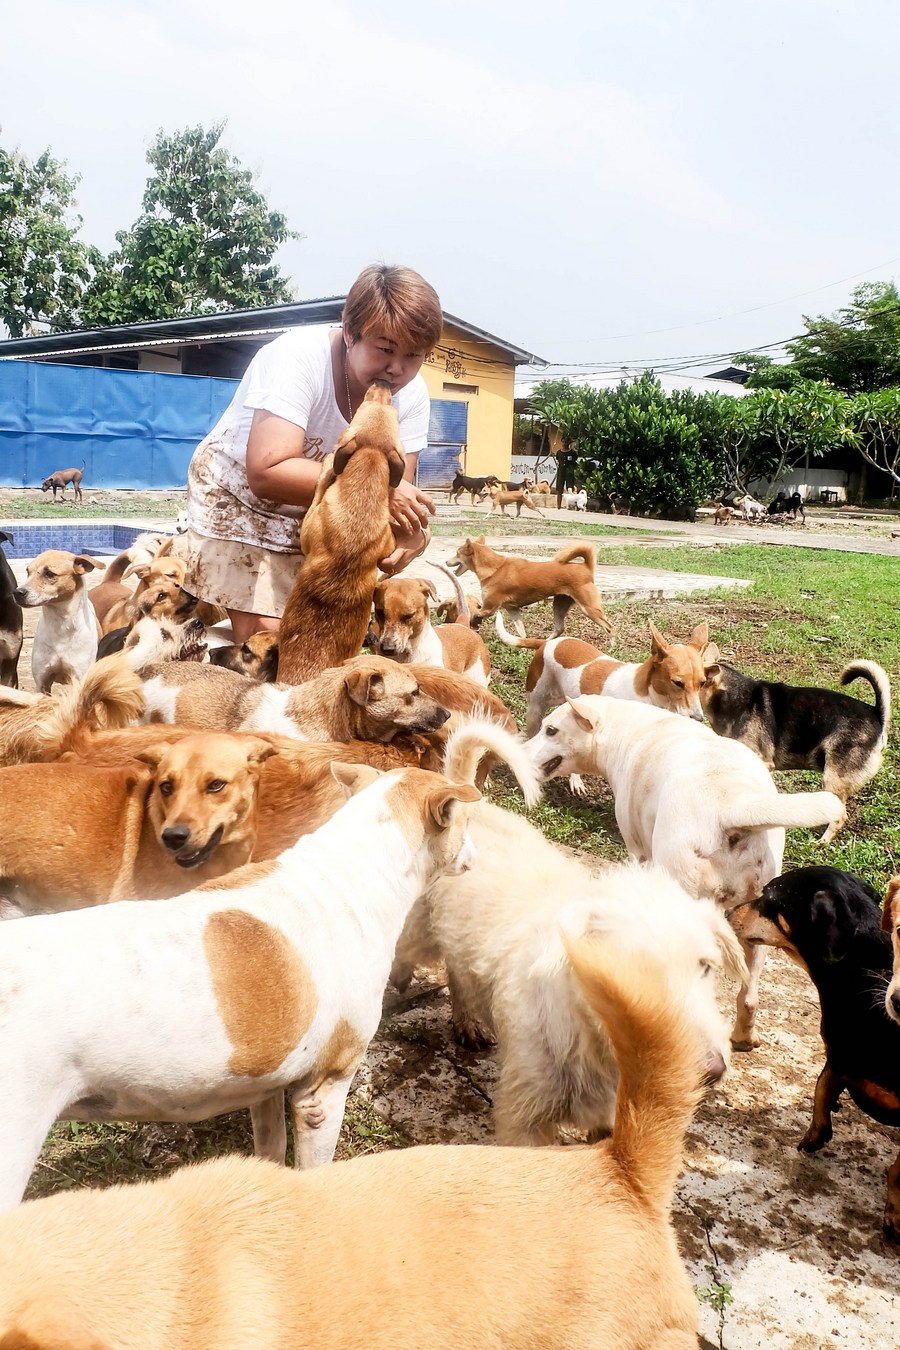 Asia Album : 'บ้านหมาจร' ในอินโดฯ ที่พักพิงน้องหมา 1,100 ตัว